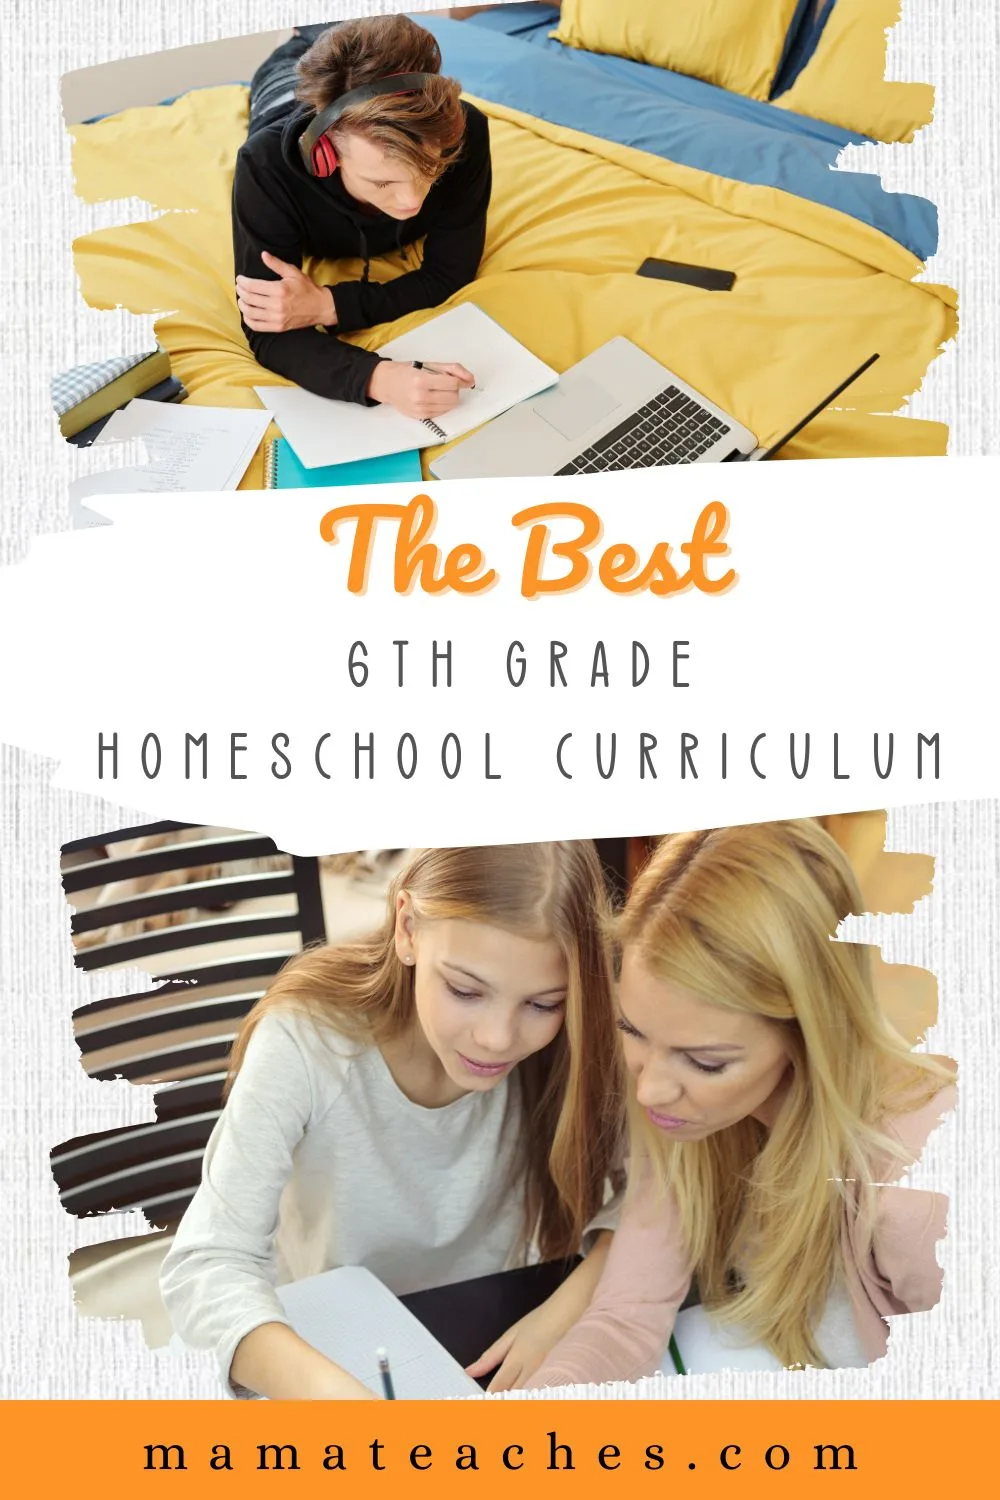 The Best 6th Grade Homeschool Curriculum